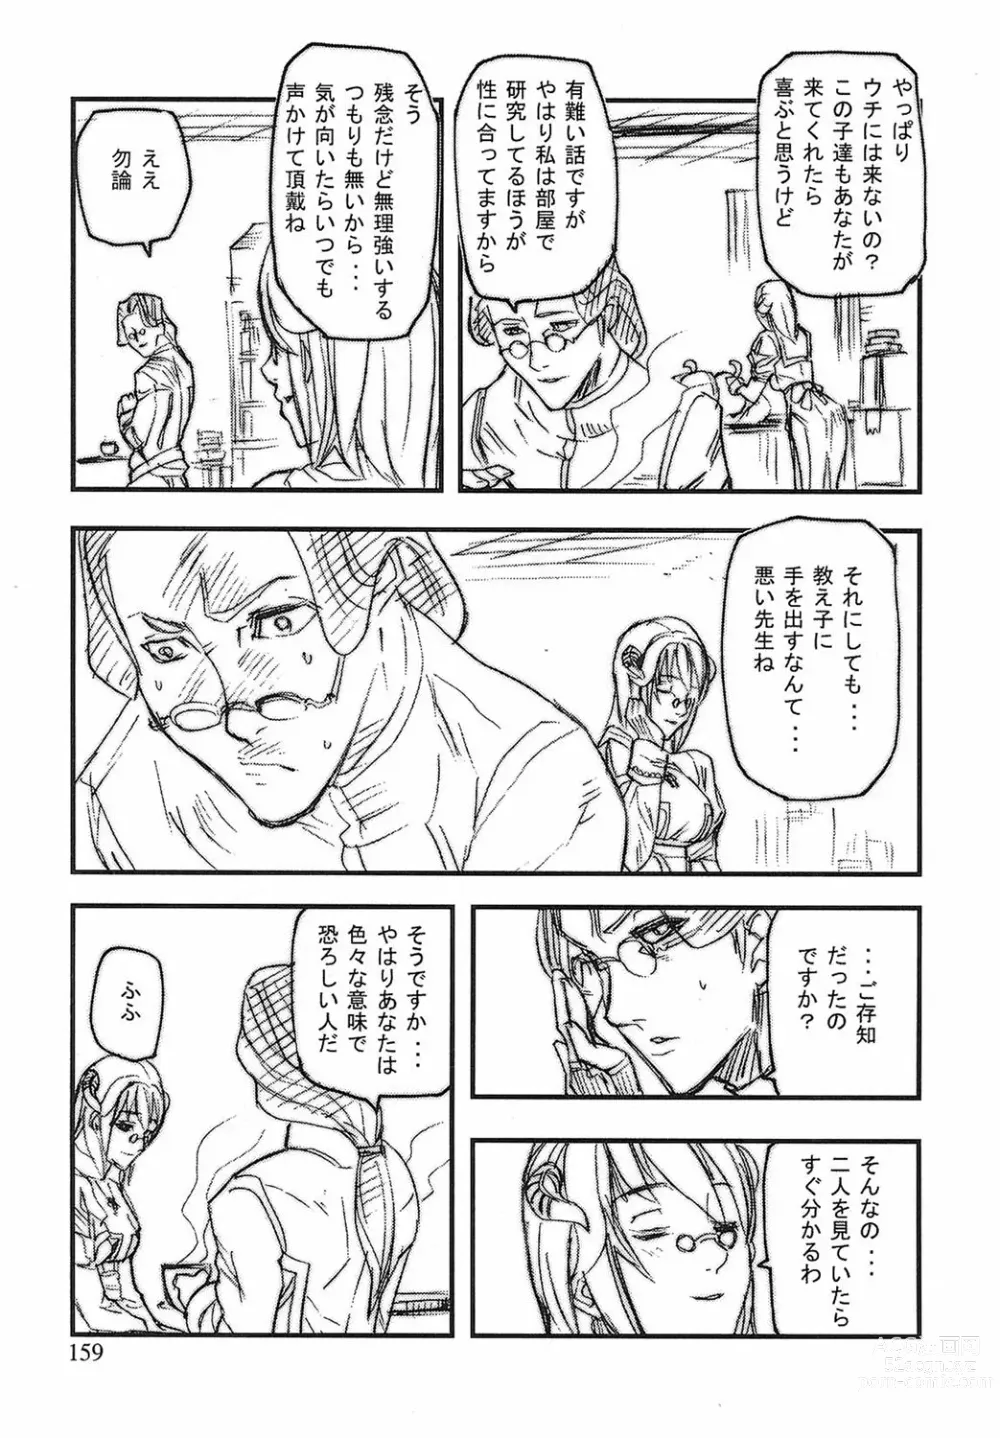 Page 156 of manga Game Holic